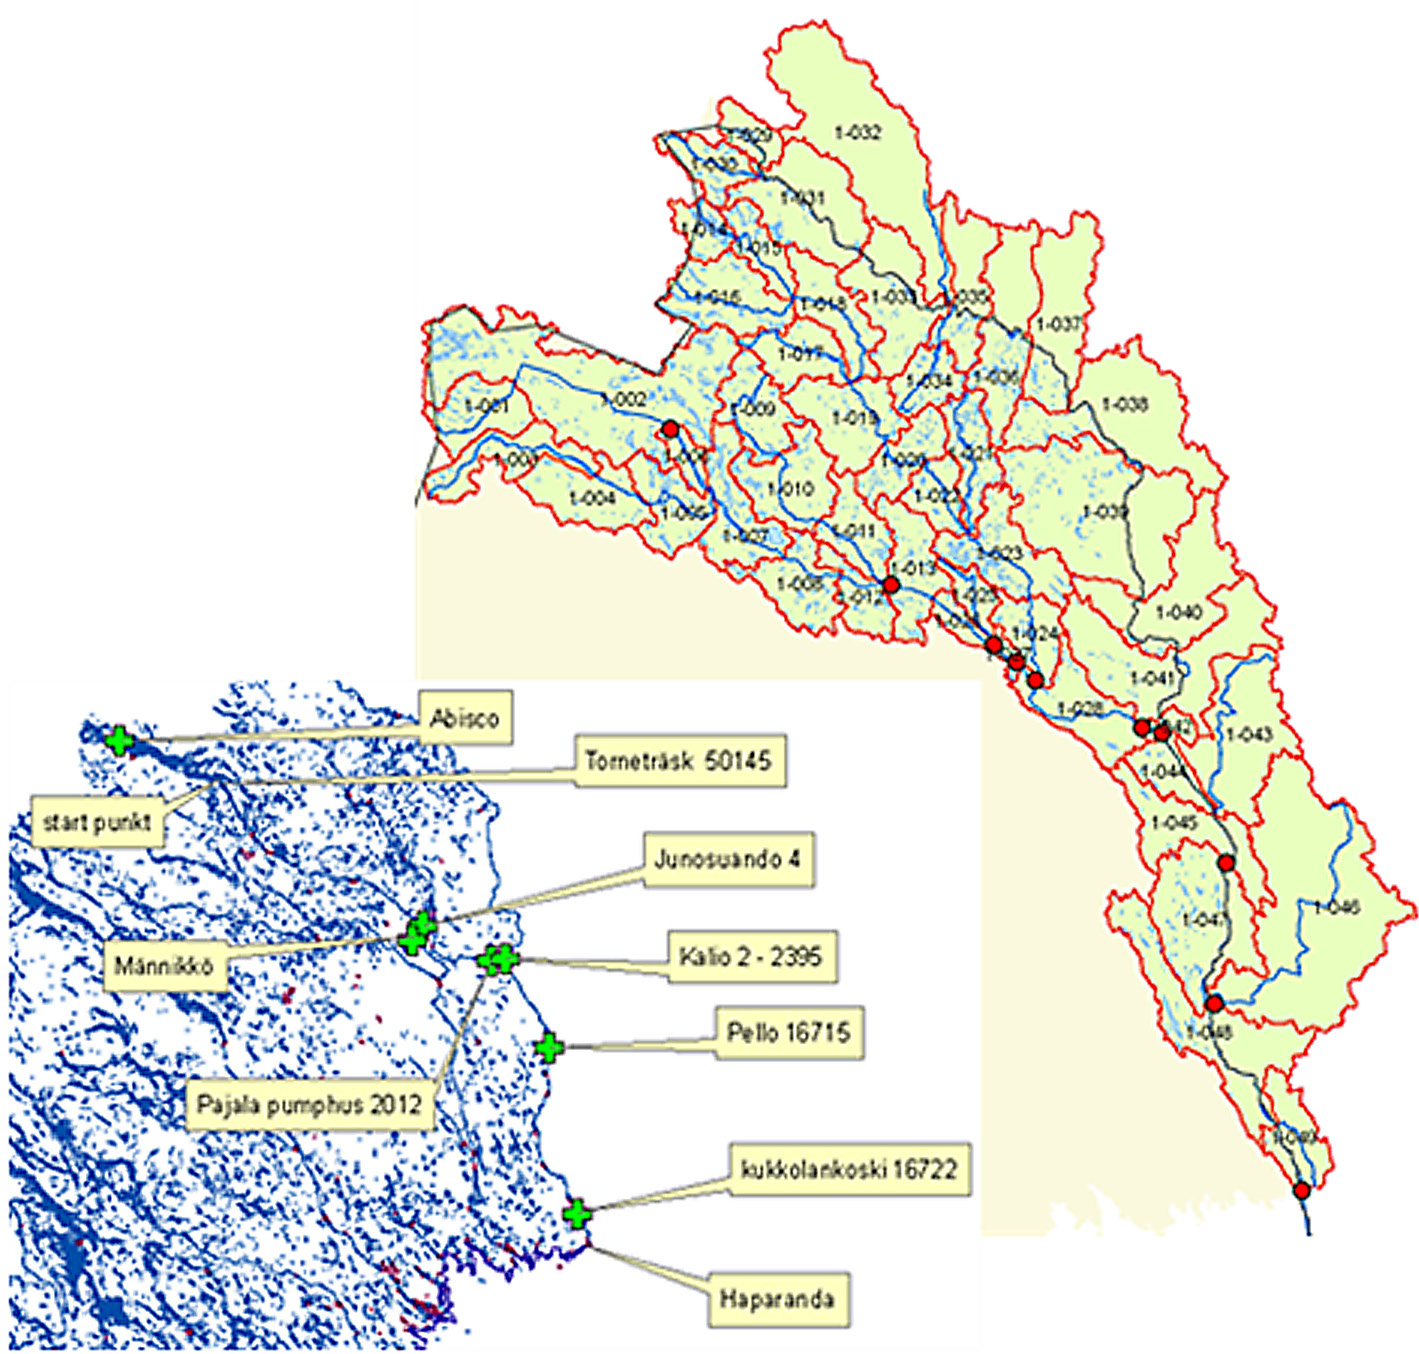 Kuva 11. Vesistöalue, aluerajaus ja arviointipisteet (oikealla) sekä hydrologiset mittausasemat Tornionjoen varrella.